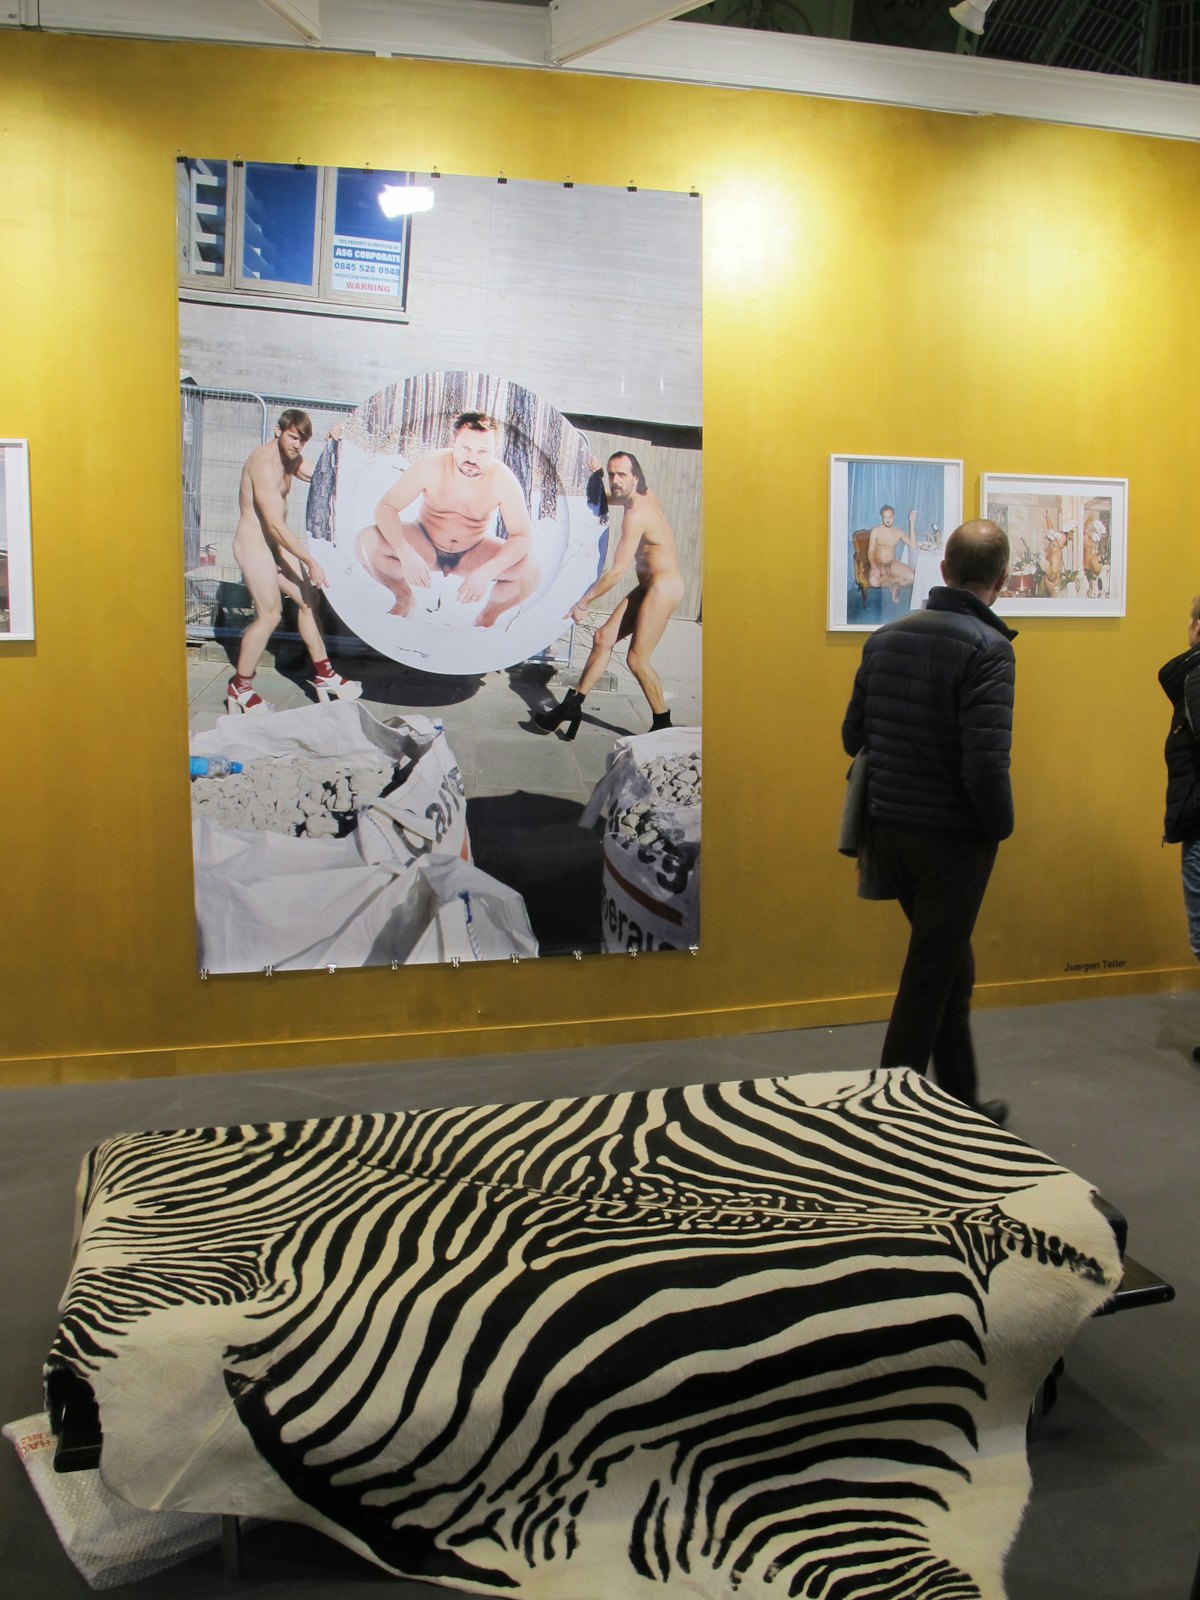 گالری Suzanne Tarasieve نشان دهنده آثار Juergen Telle در پاریس ، فرانسه است که در 09 نوامبر مشاهده شده است ...